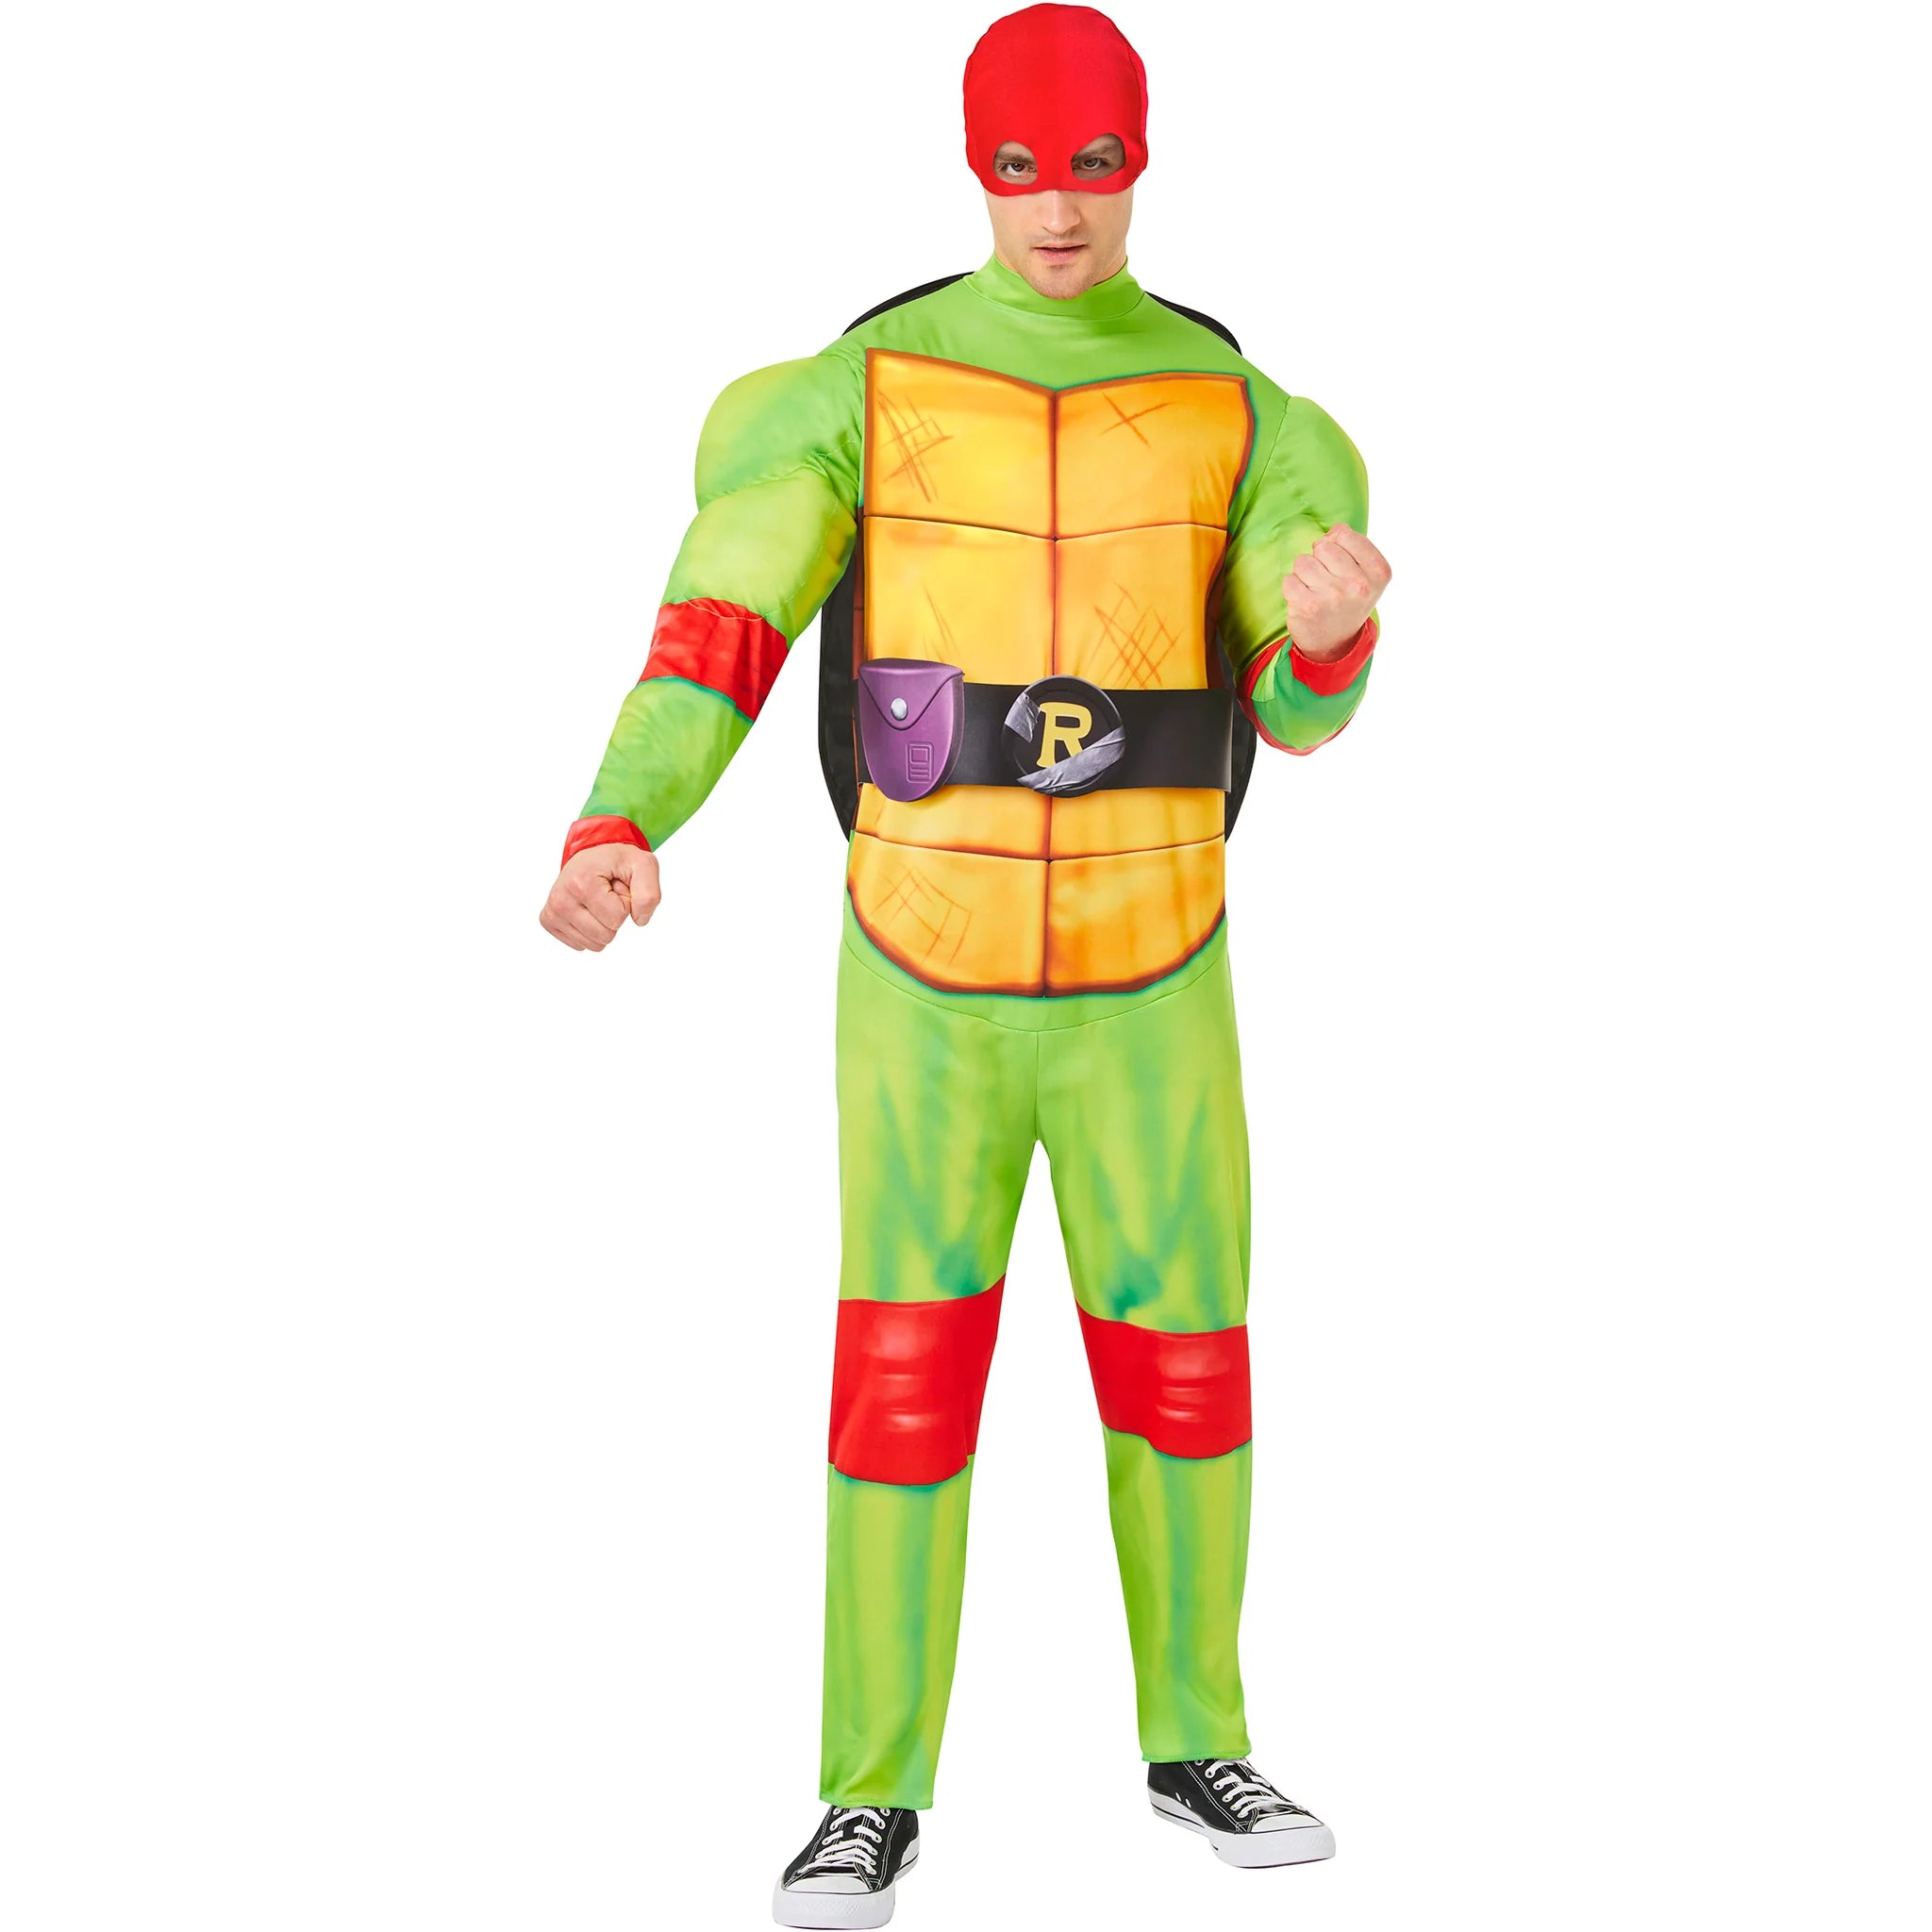 Teenage Mutant Ninja Turtles Mutant Raphael Costume Adult